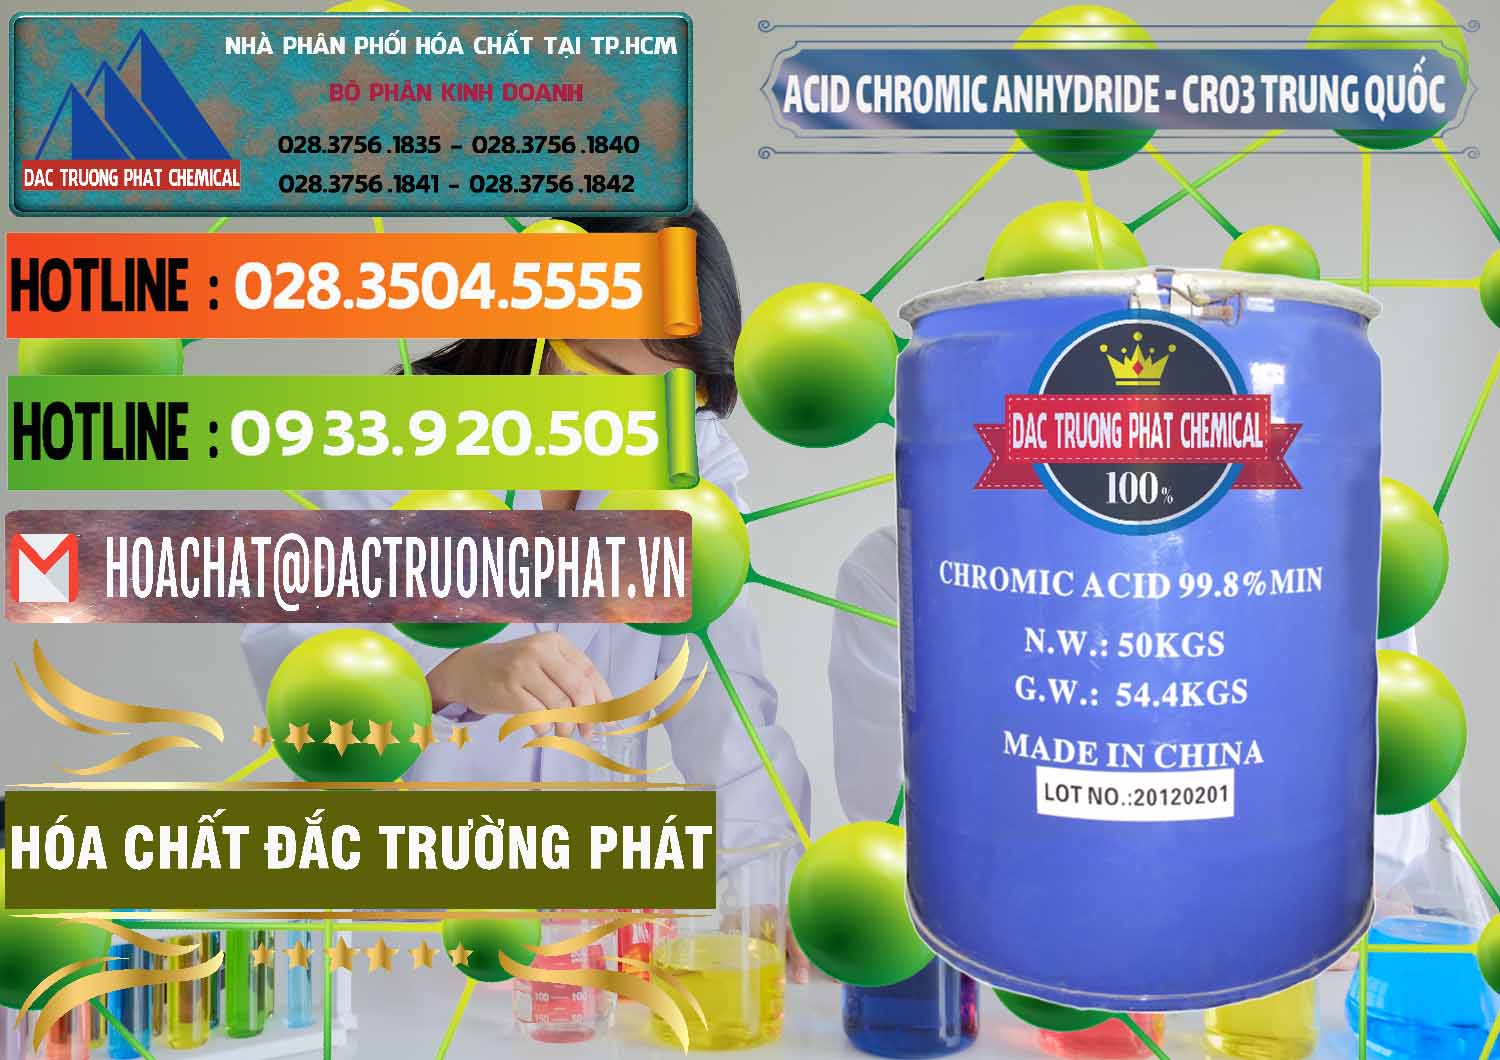 Cty nhập khẩu - bán Acid Chromic Anhydride - Cromic CRO3 Trung Quốc China - 0007 - Cung cấp - phân phối hóa chất tại TP.HCM - cungcaphoachat.com.vn